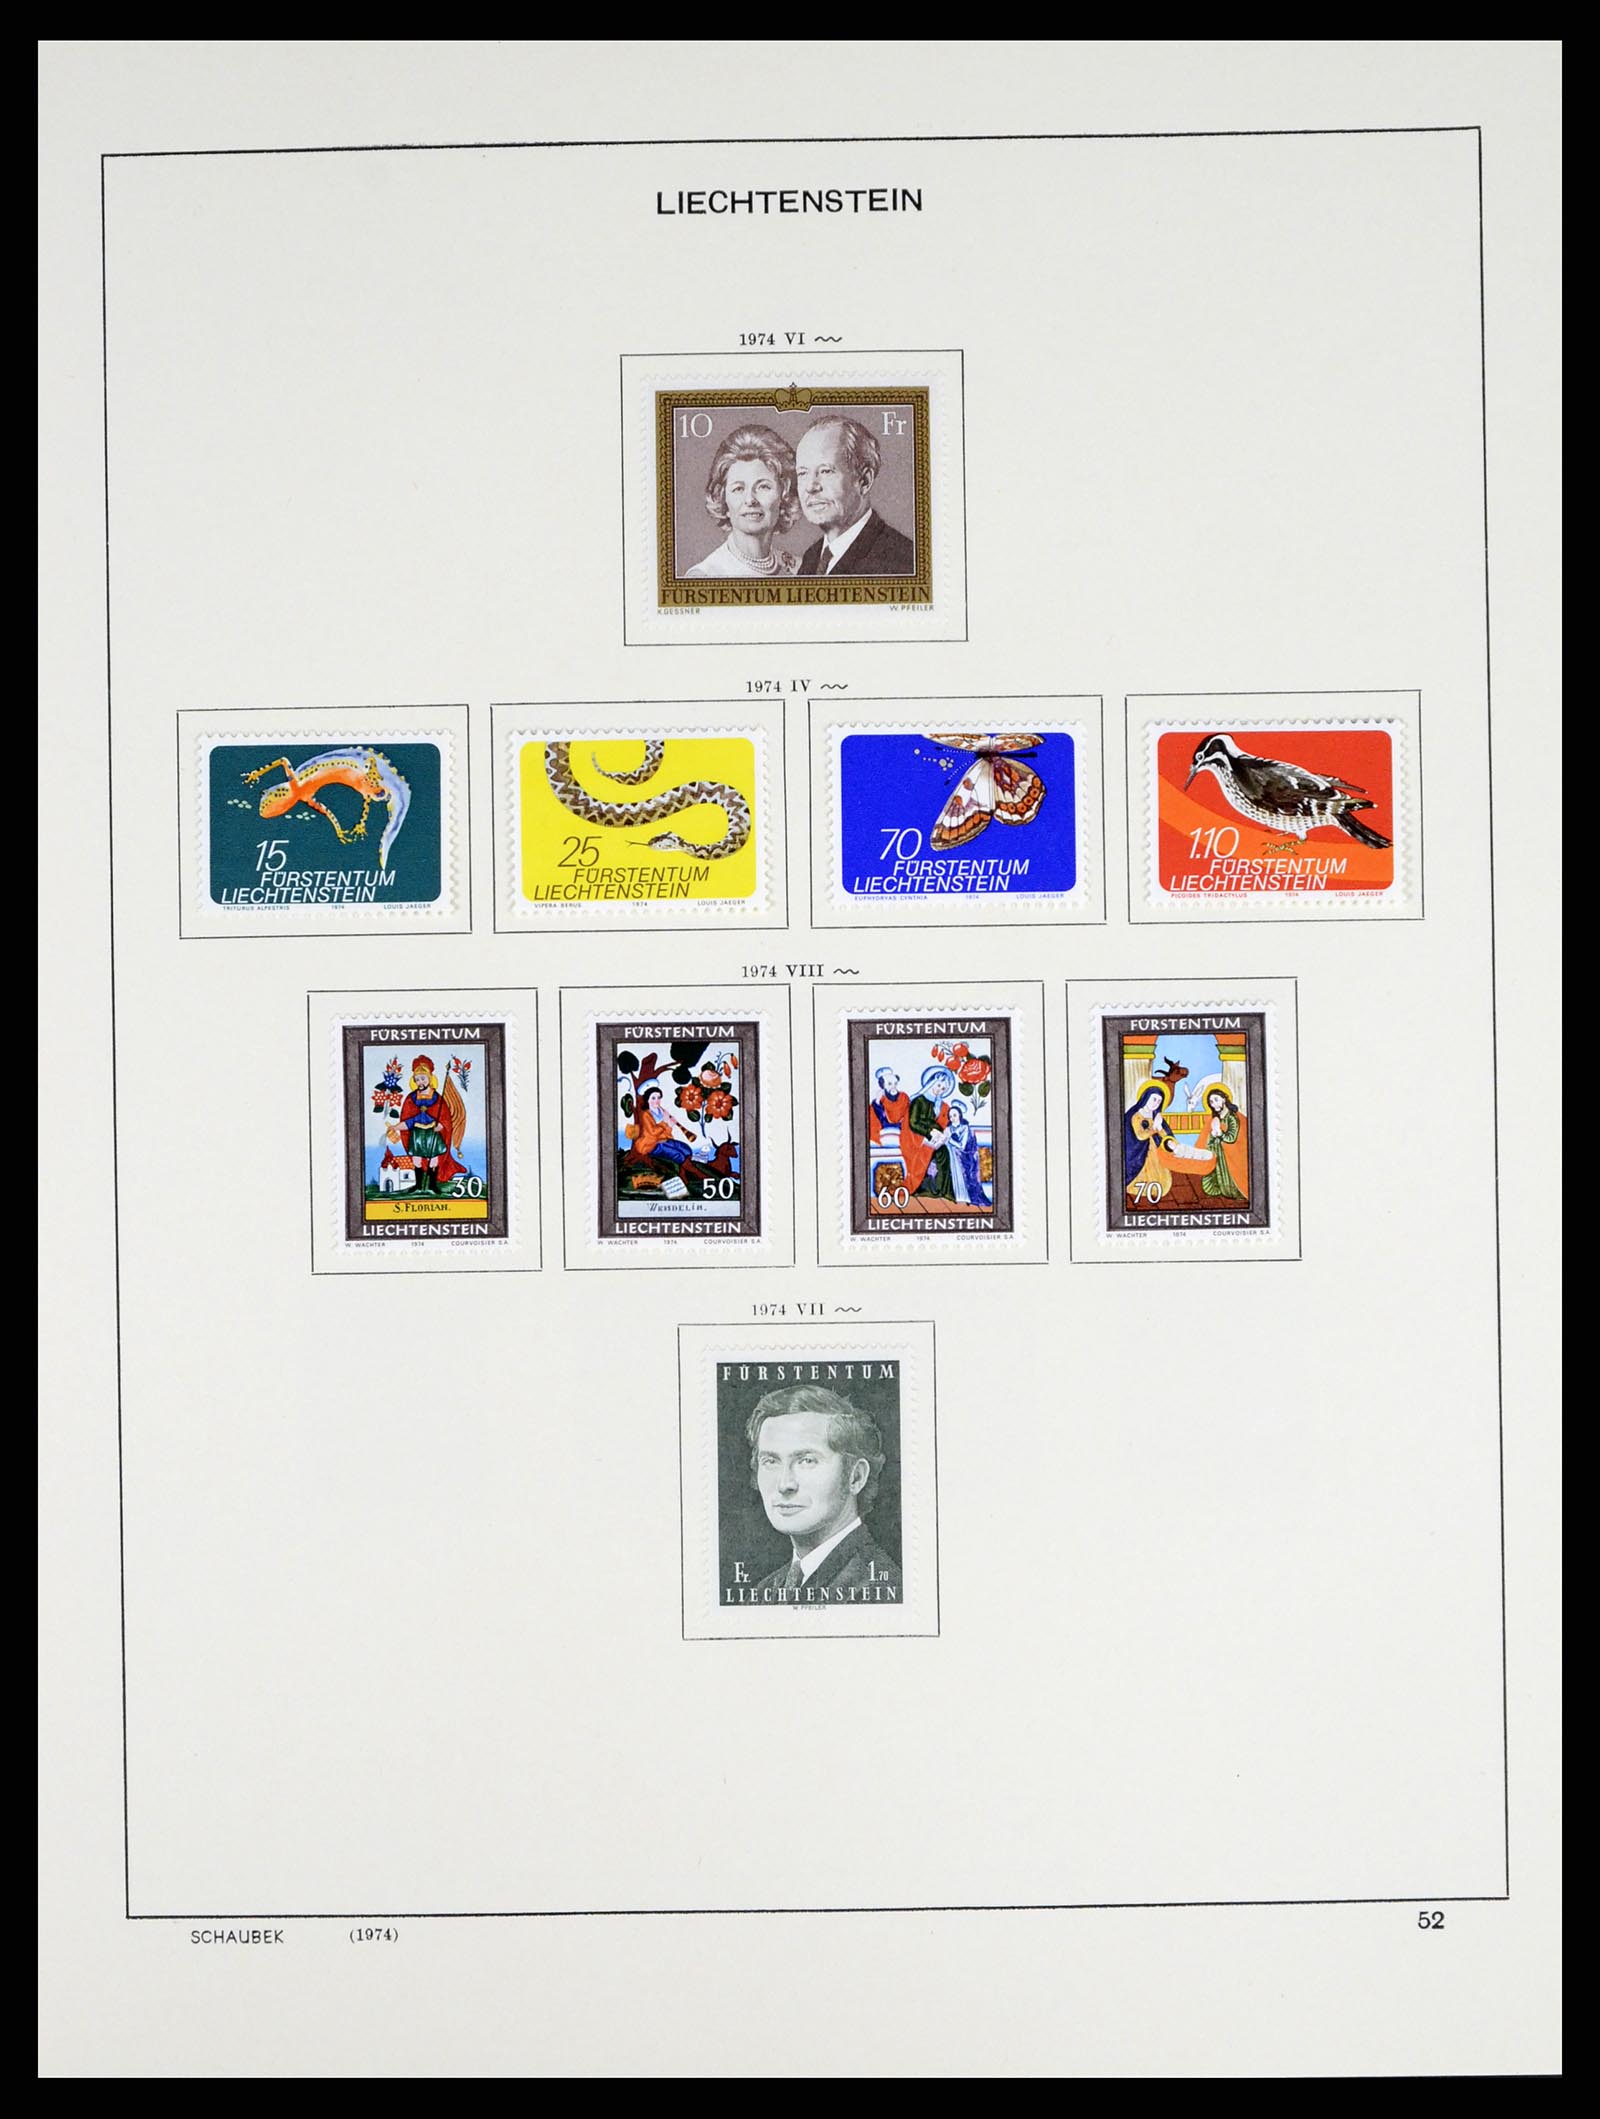 37547 064 - Stamp collection 37547 Liechtenstein 1912-2011.